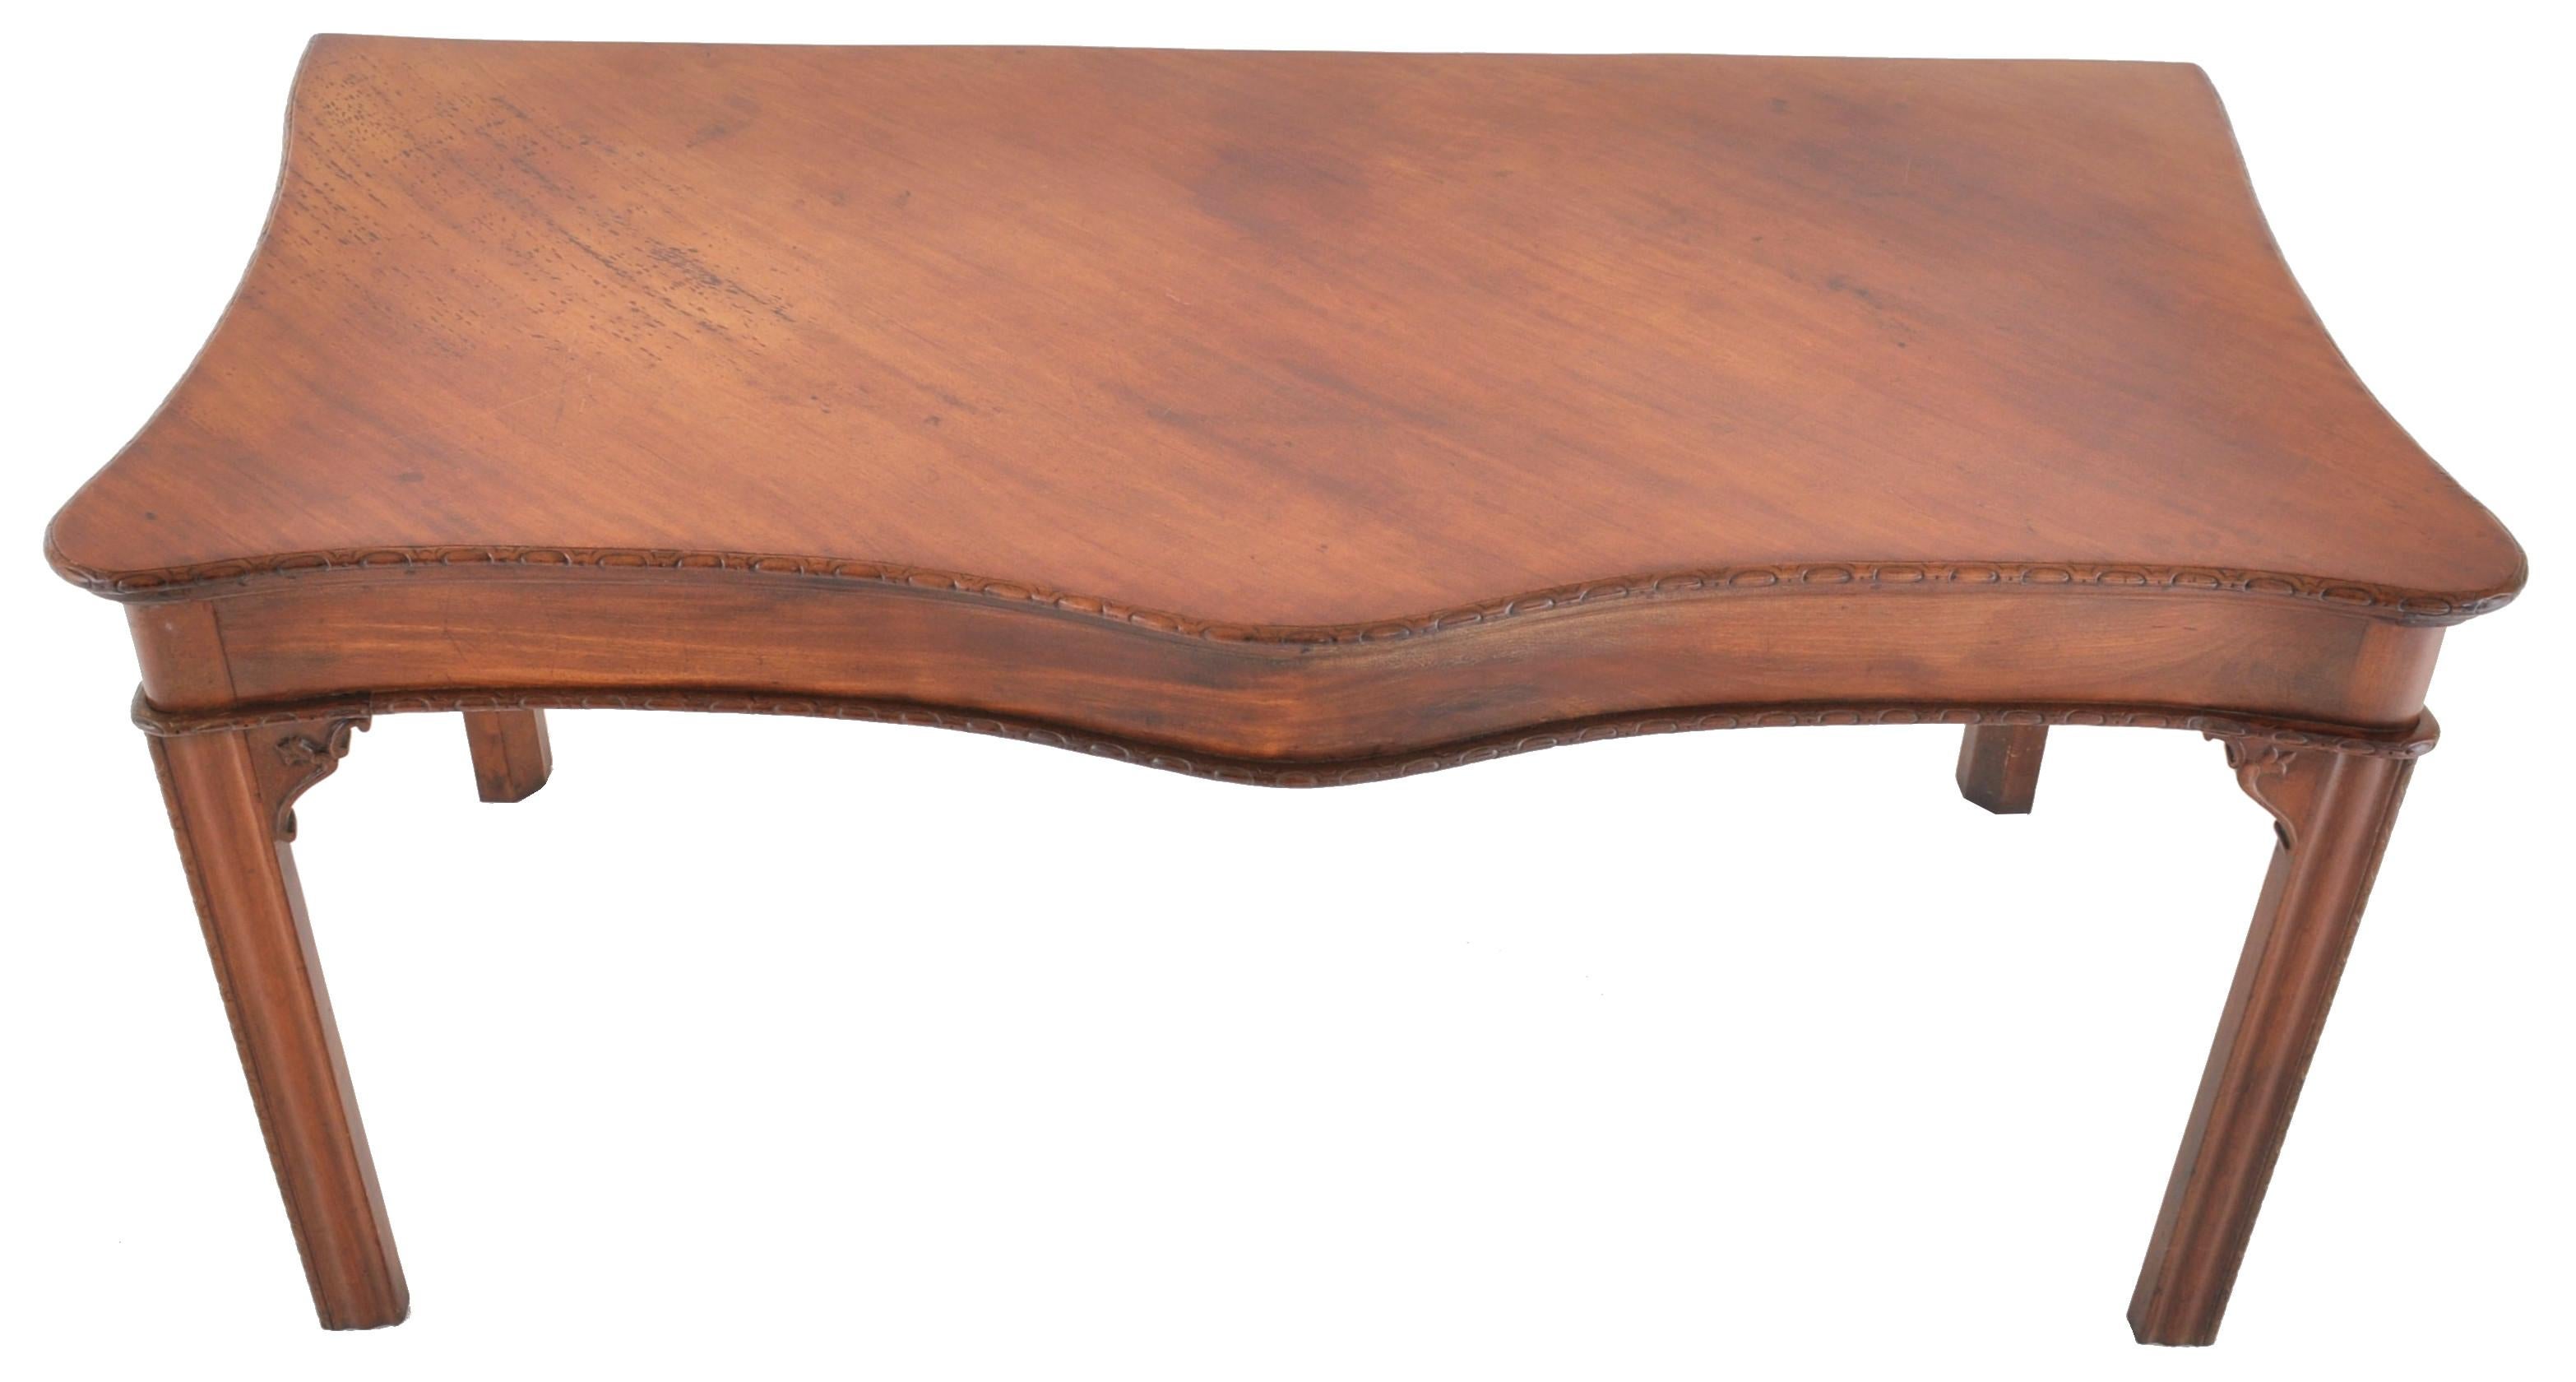 Eine bedeutende antike irische Chippendale-Mahagoni-Anrichte aus der Zeit von George III, um 1770. Der Tisch ist aus feinstem kubanischem Mahagoni gefertigt und hat eine serpentinenförmige Front mit einer gadronierten Kante. Die Beine haben